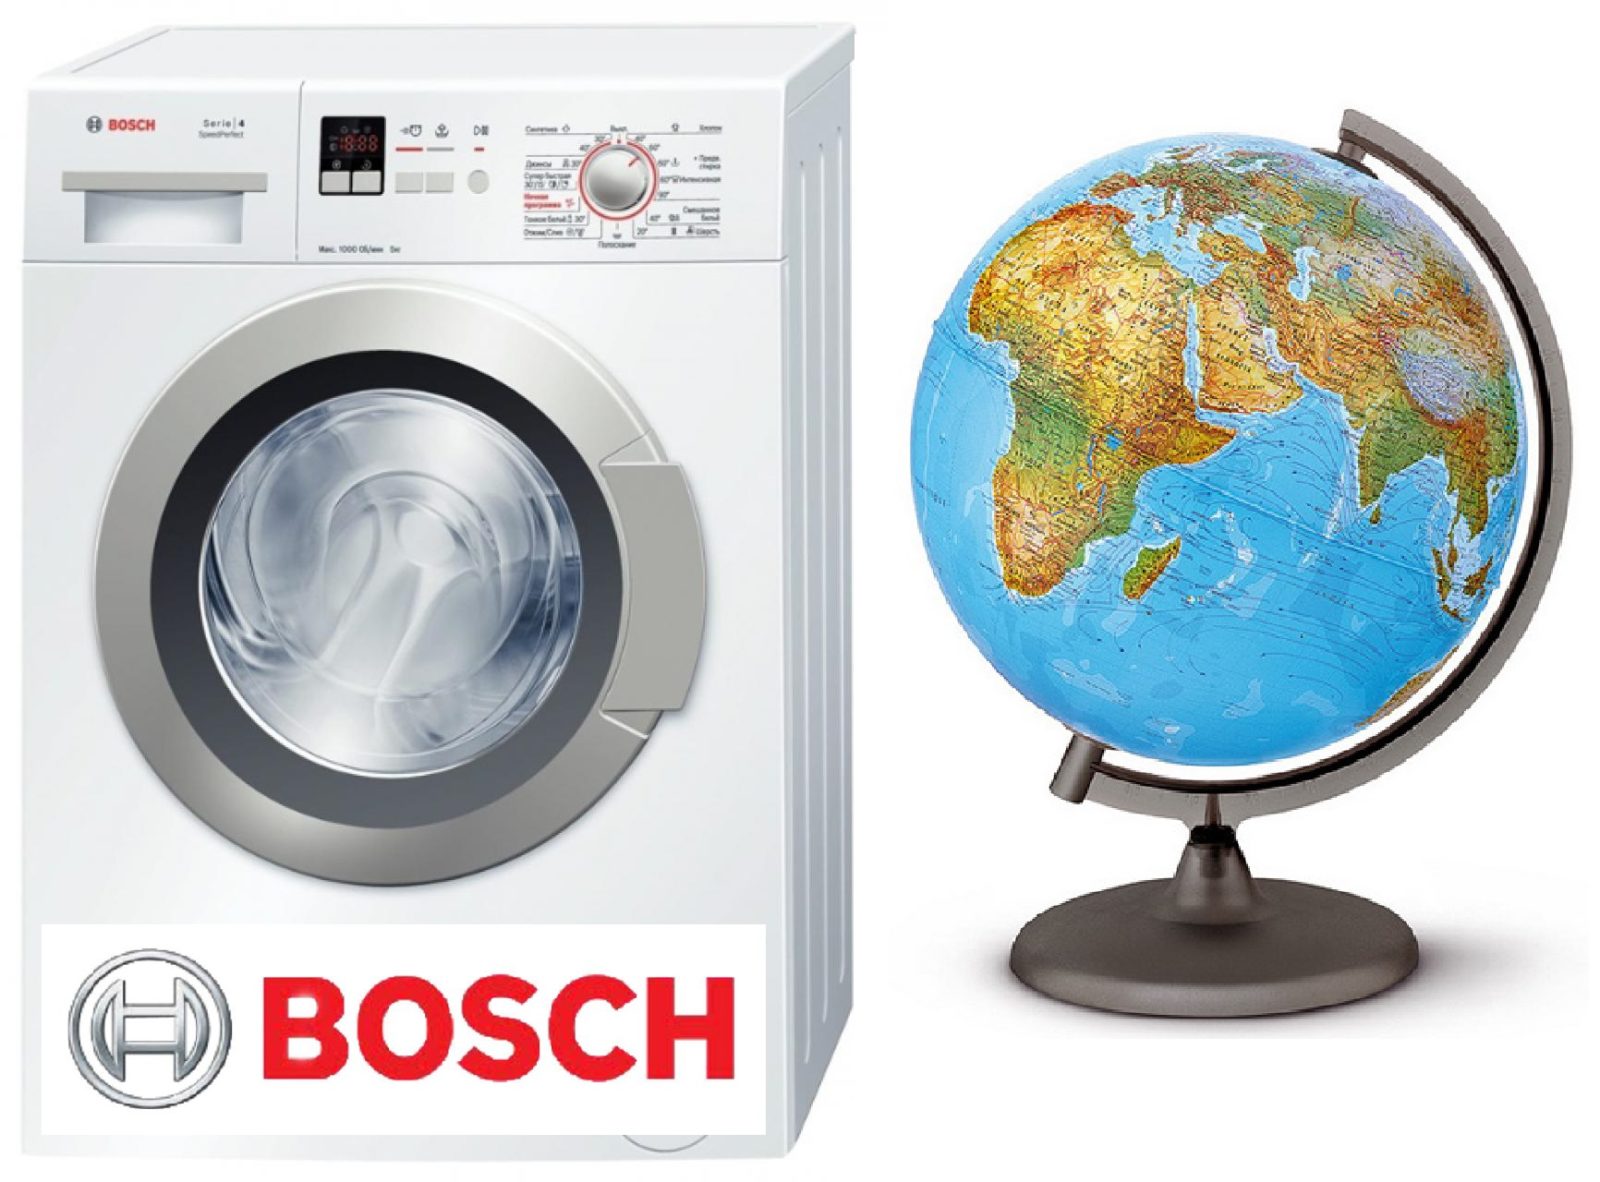 saan naka-assemble ang mga washing machine ng Bosch?